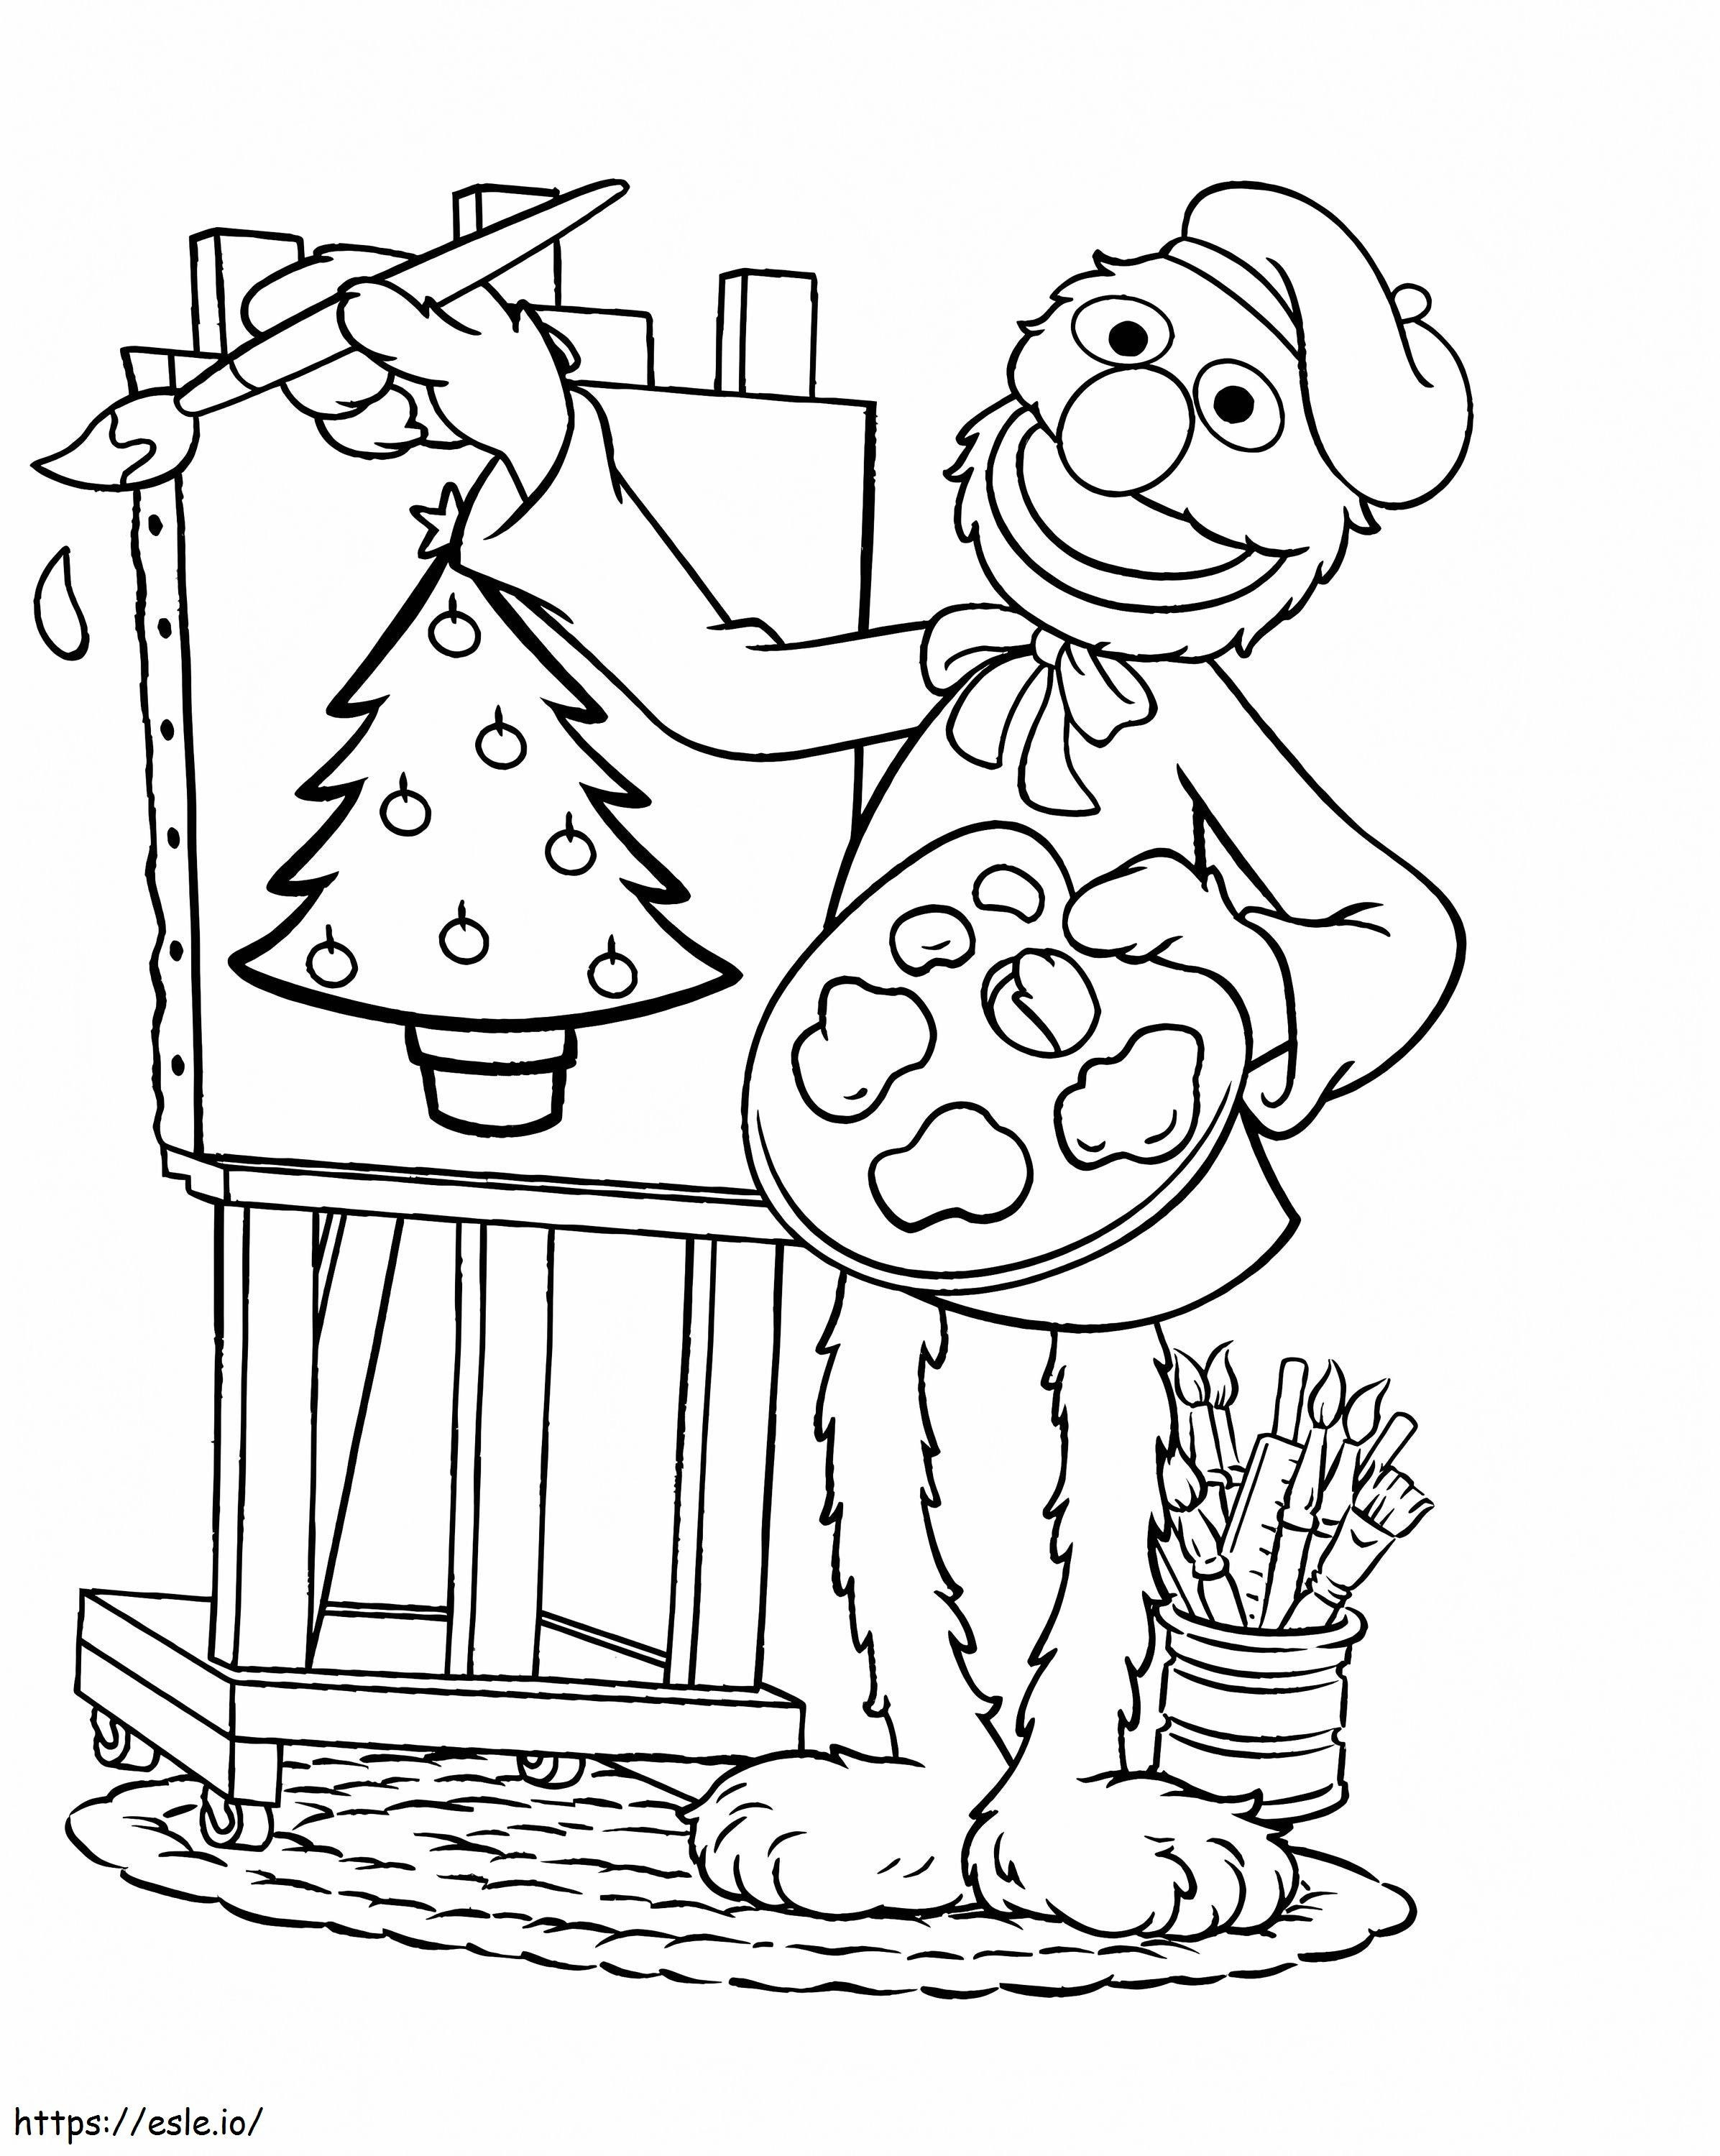 Grover pictează Pomul de Crăciun de colorat